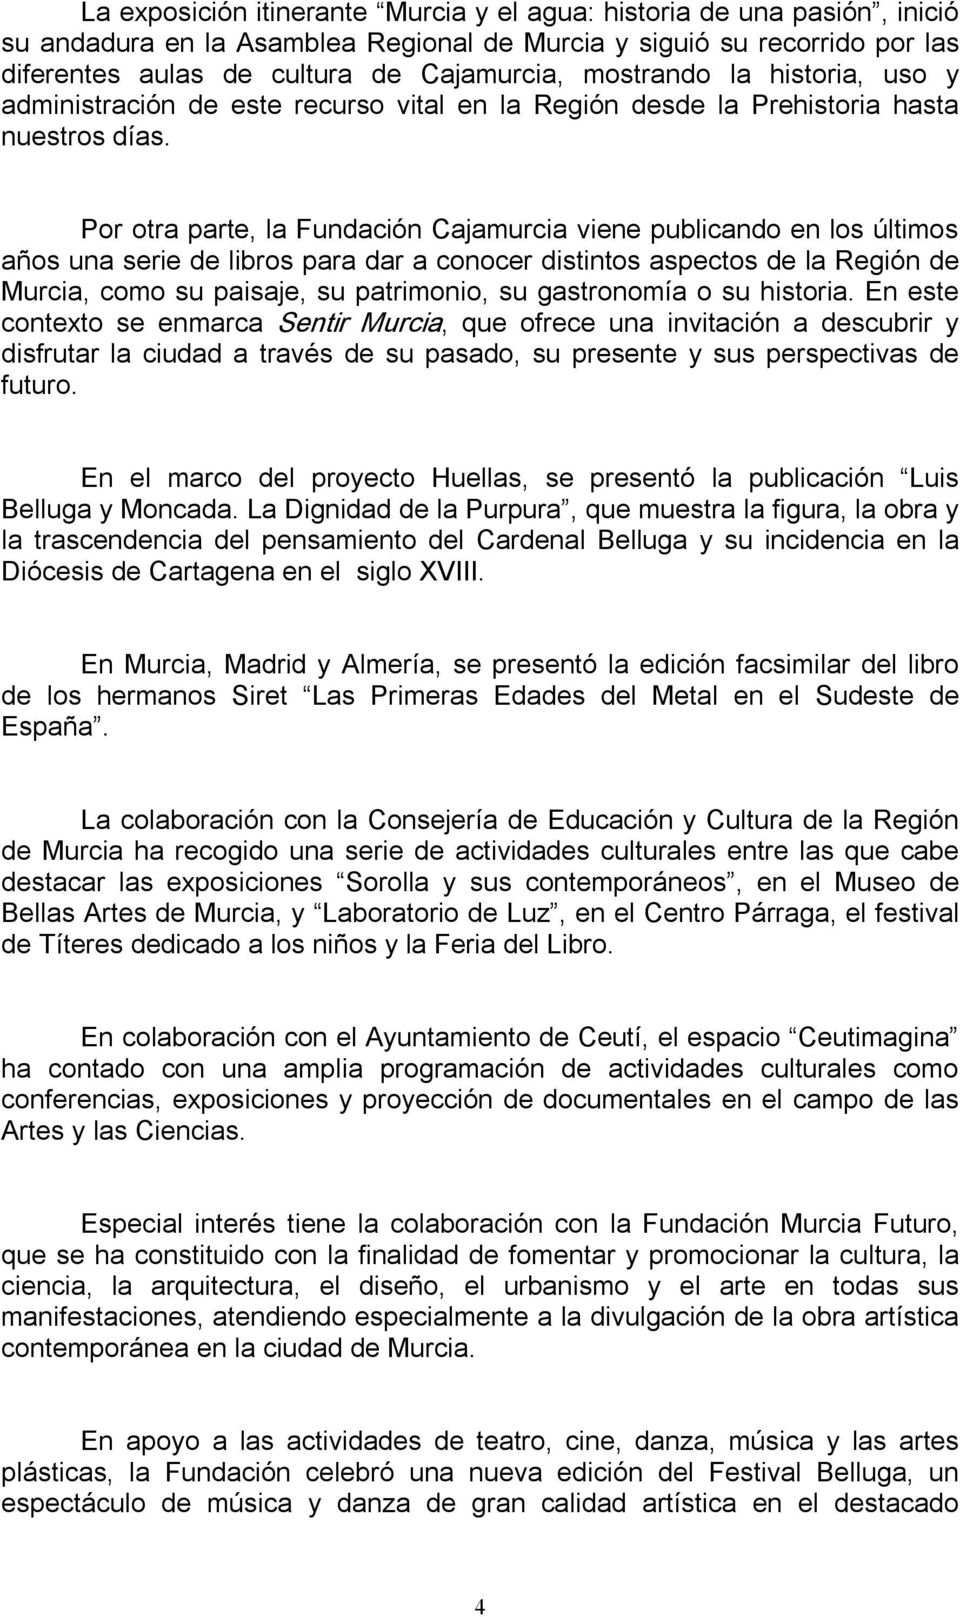 Por otra parte, la Fundación Cajamurcia viene publicando en los últimos años una serie de libros para dar a conocer distintos aspectos de la Región de Murcia, como su paisaje, su patrimonio, su